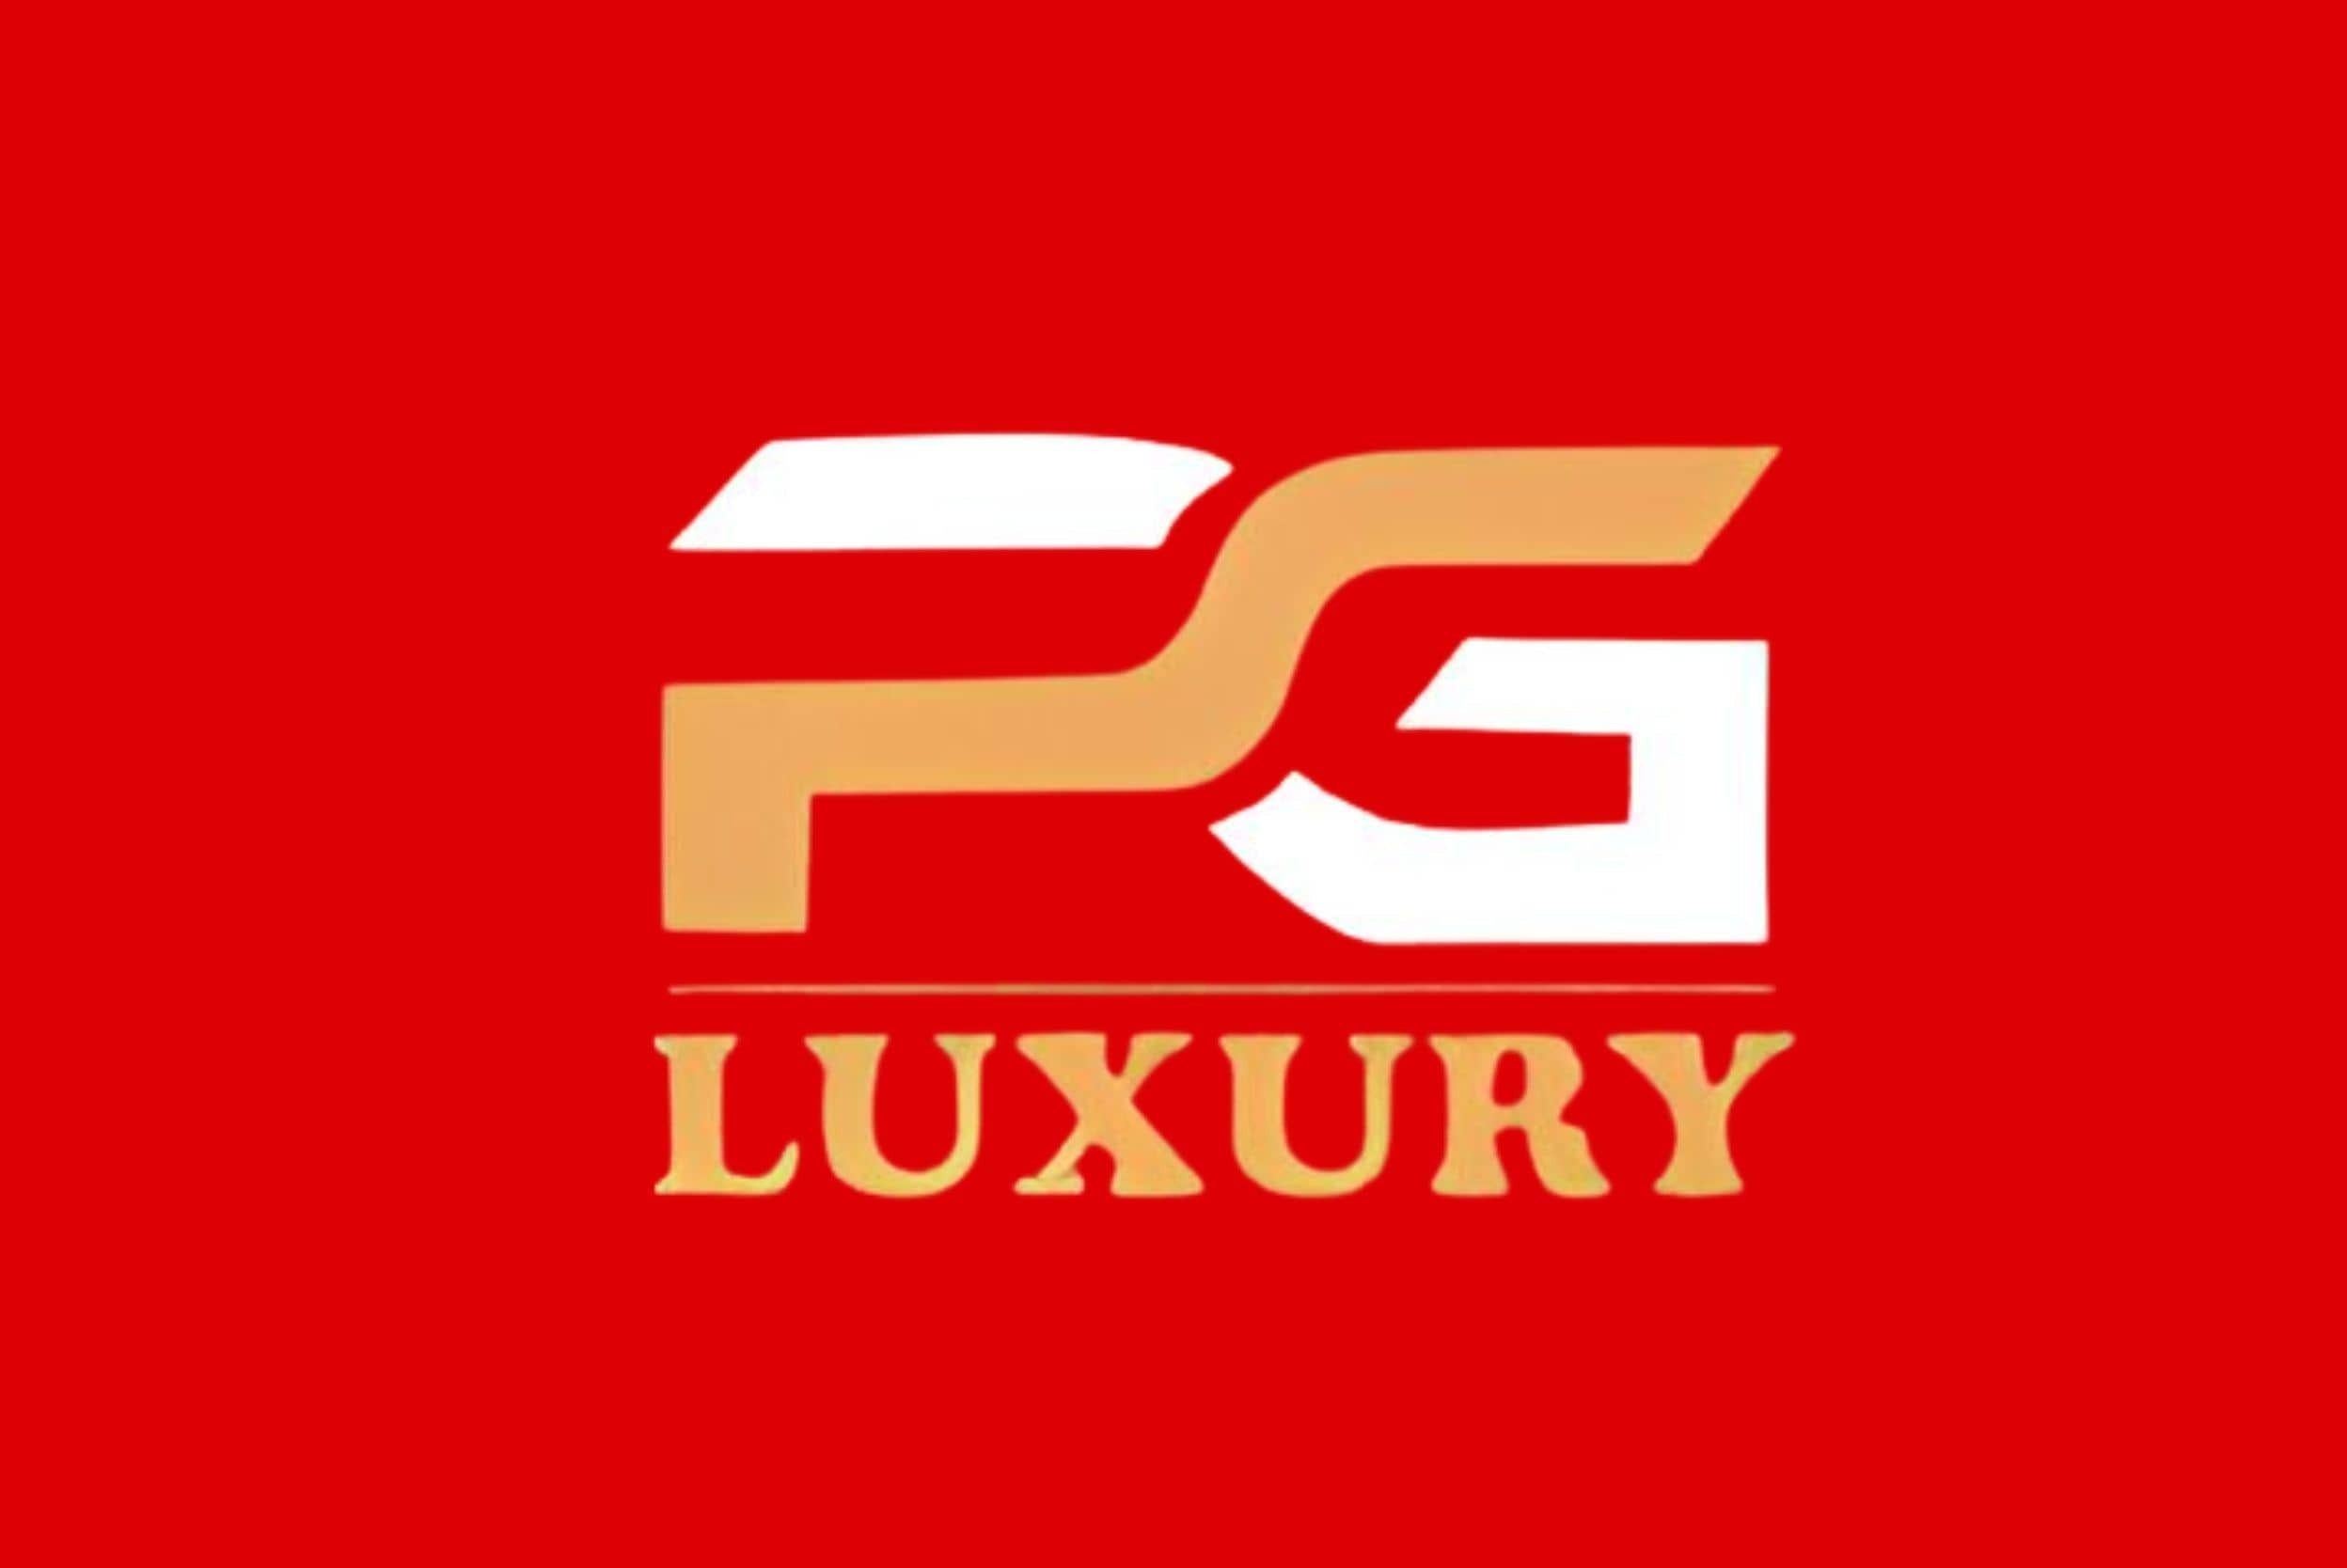 pgluxury-logo